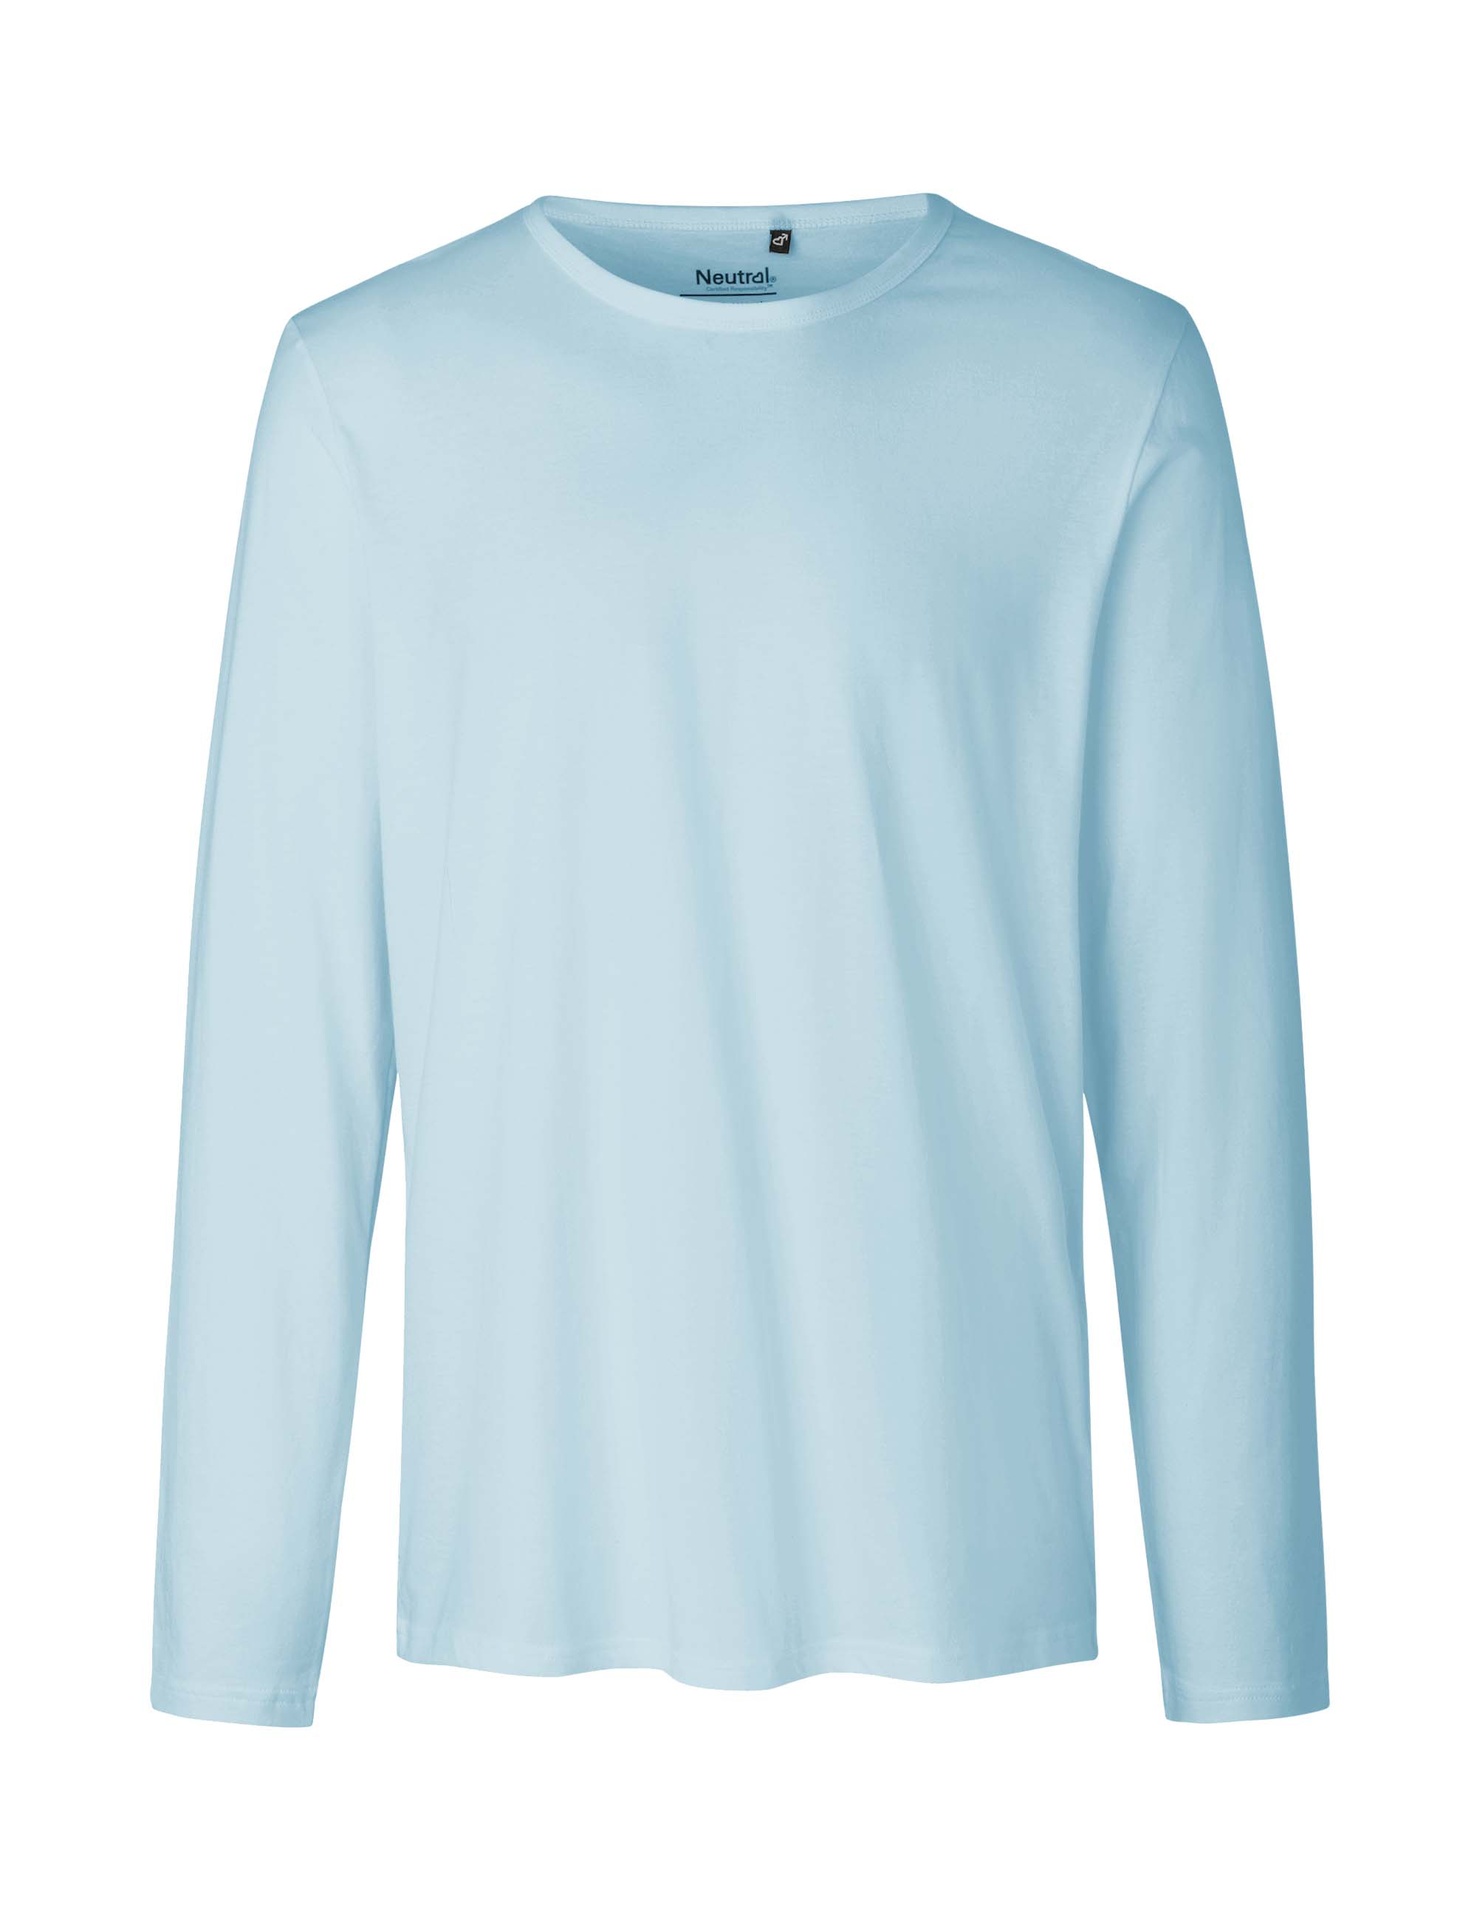 [PR/02459] Mens Long Sleeve T-Shirt (Light Blue 69, M)